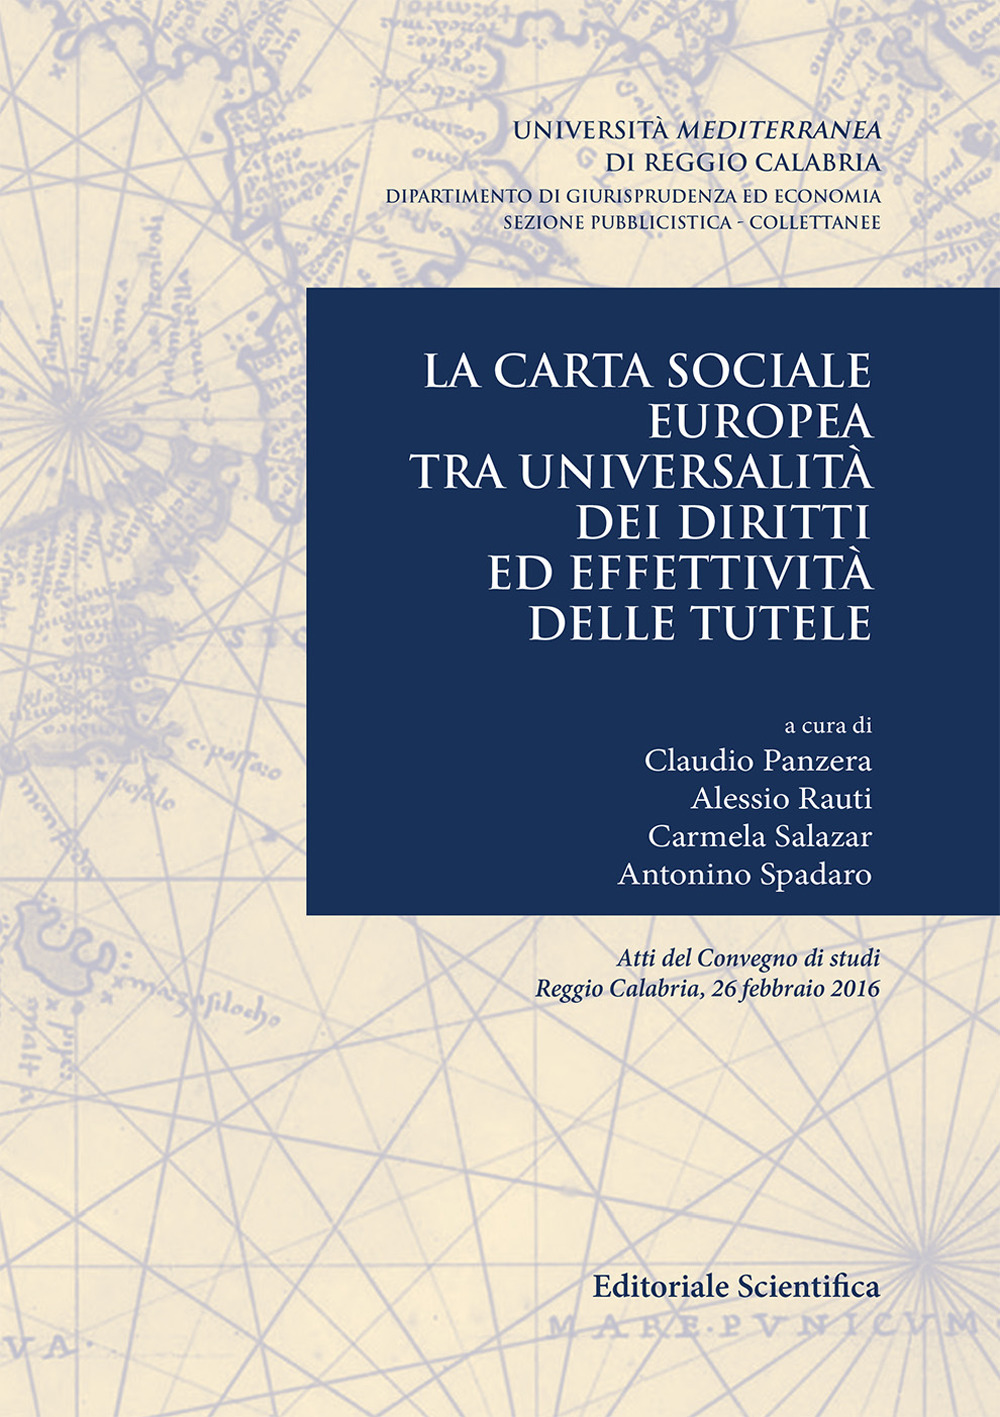 La carta sociale europea tra universalità dei diritti ed effettività delle tutele. Atti del Convegno di studi (Reggio Calabria, 26 febbraio 2016)